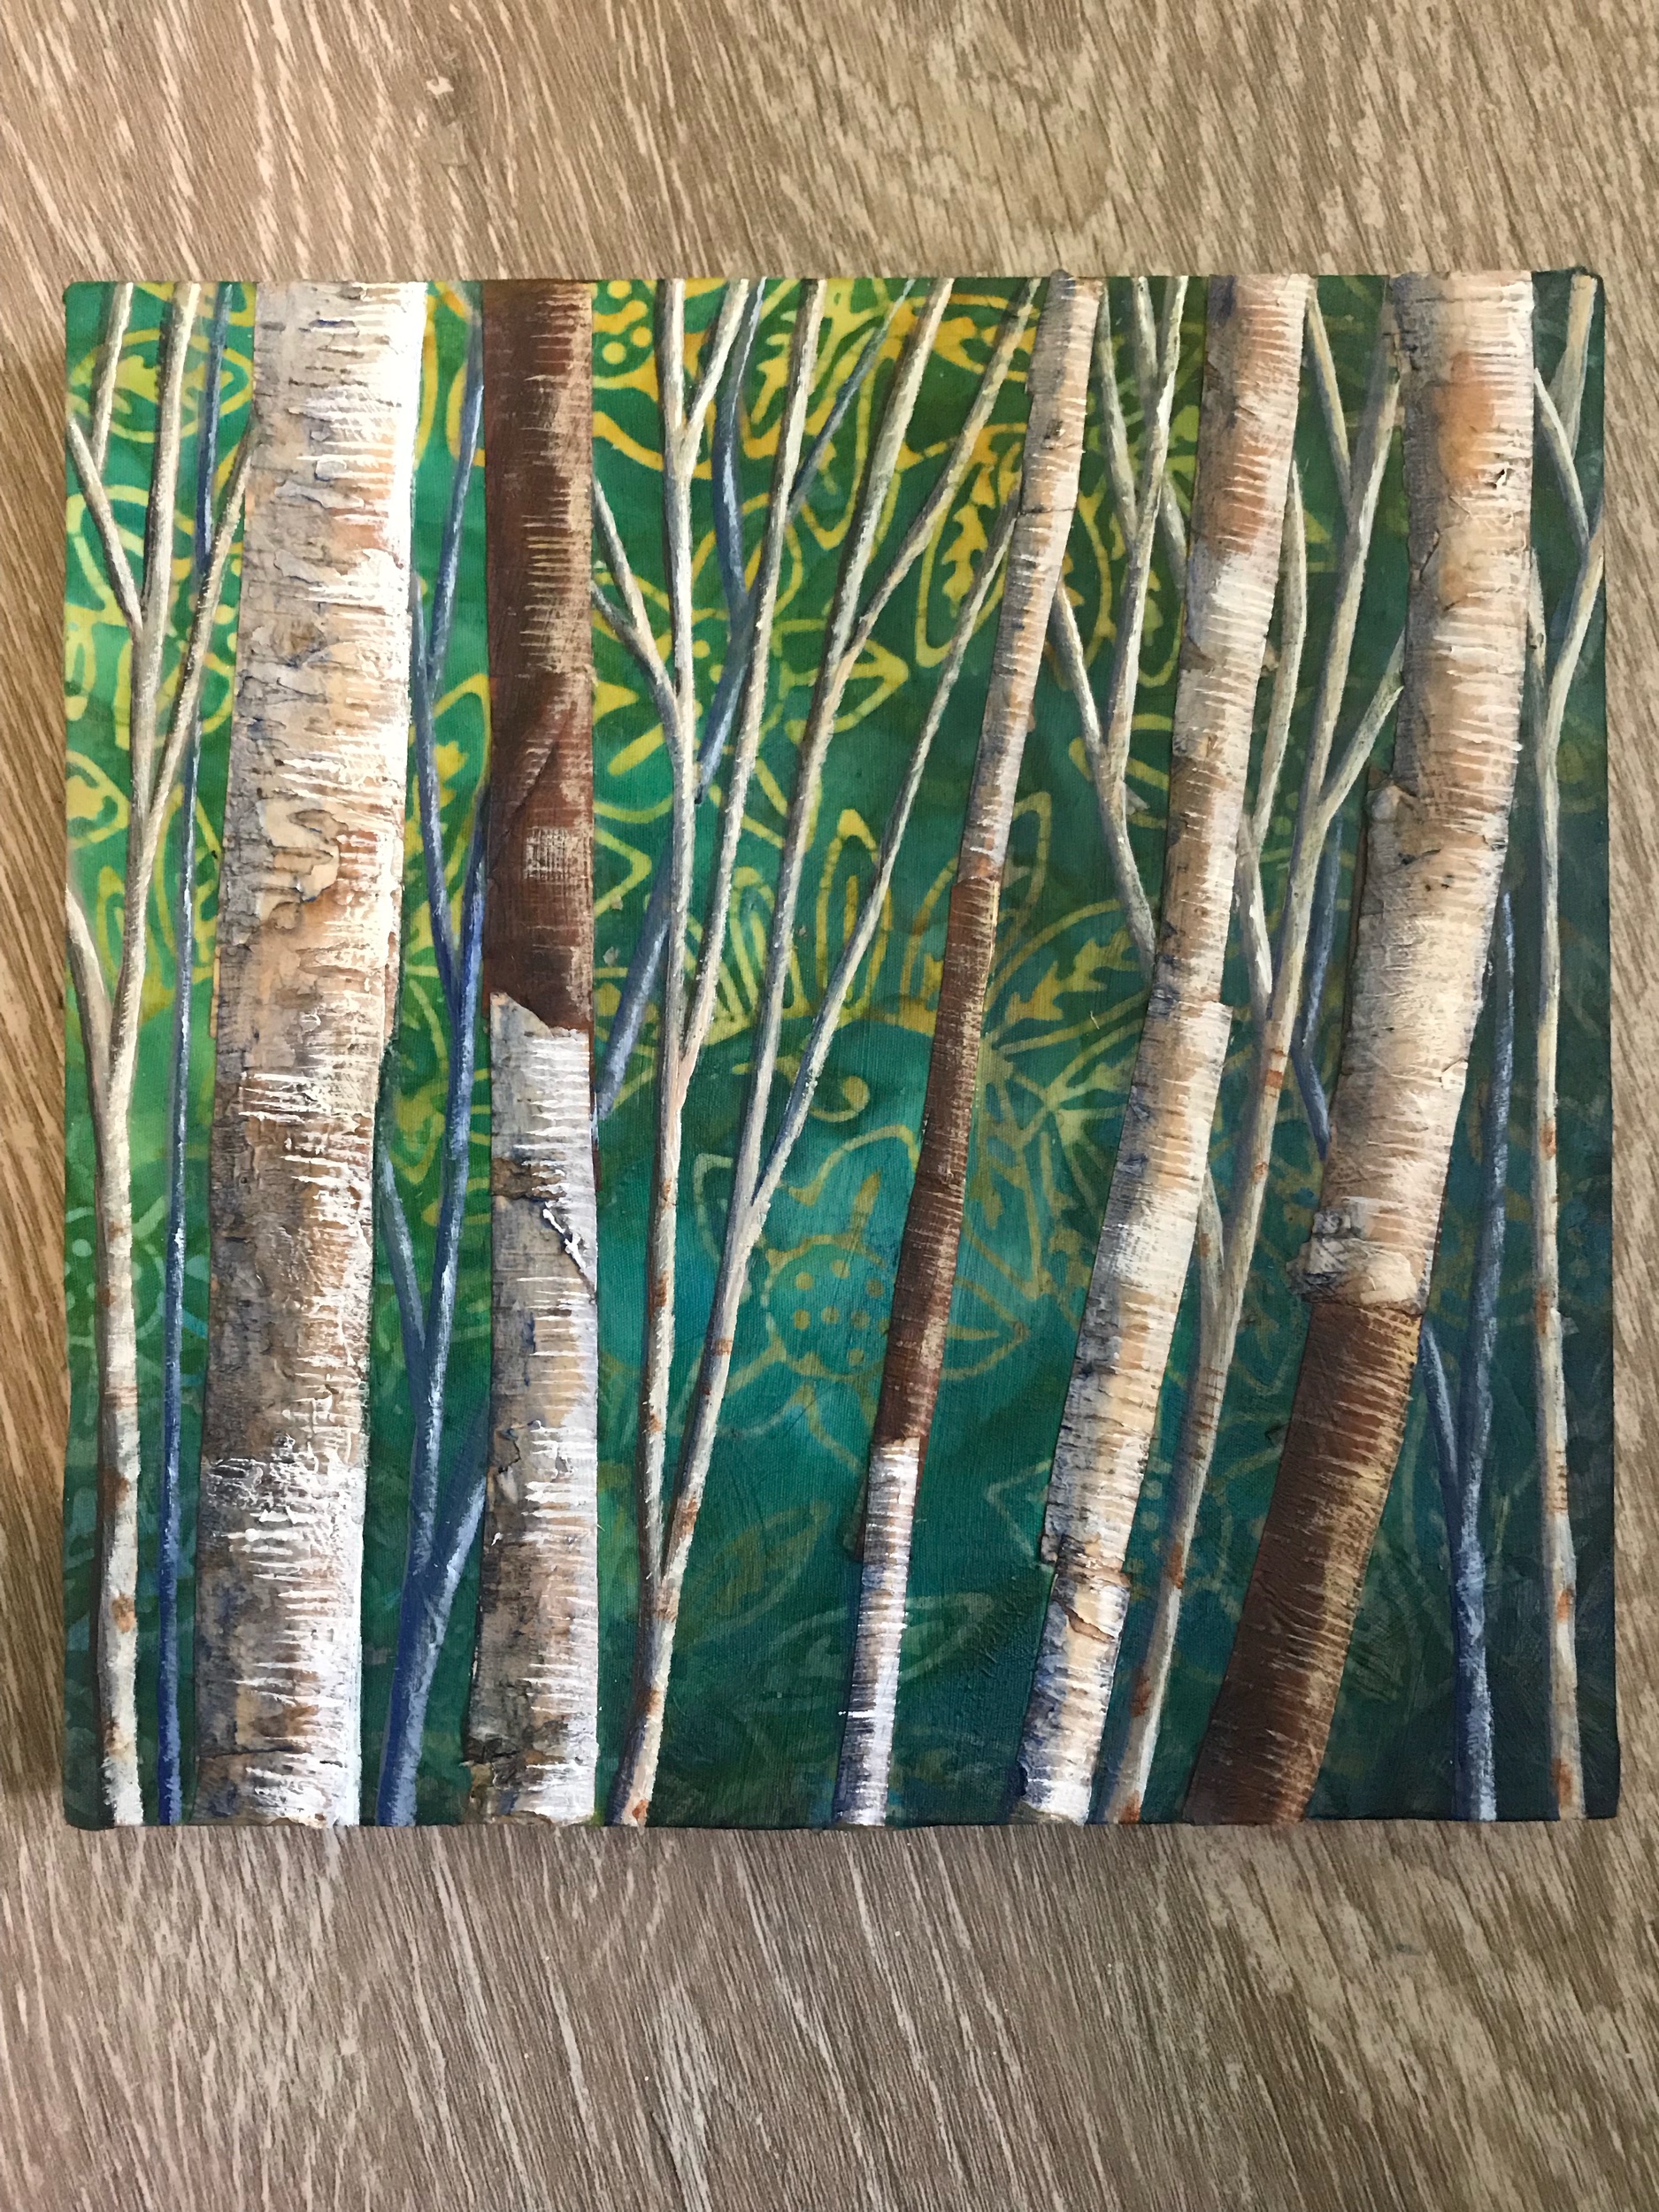 Mixed Media:  birch bark and acrylic on fabric. 8” x 8”